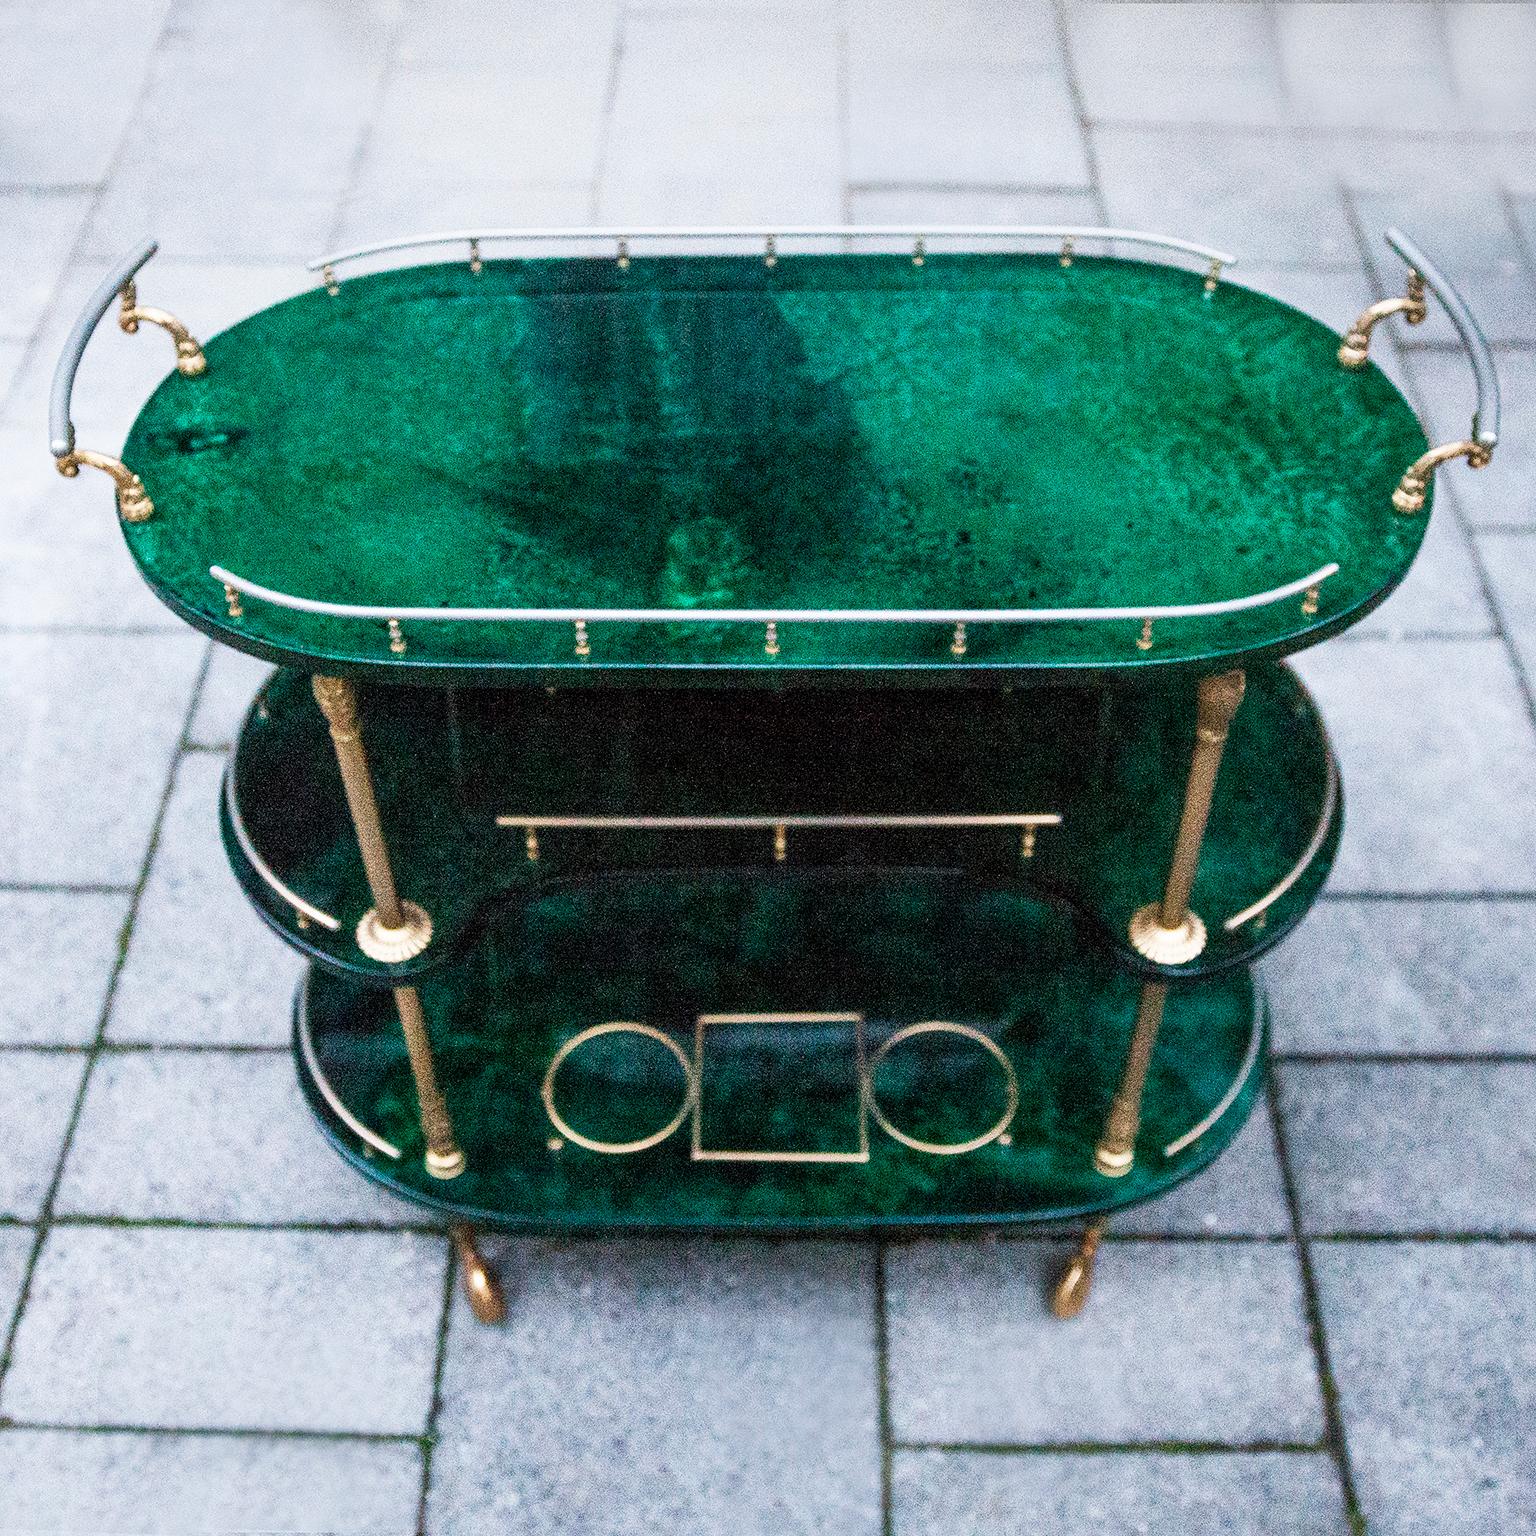 Italian Aldo Tura Oval Green Three-Story Bar Cart